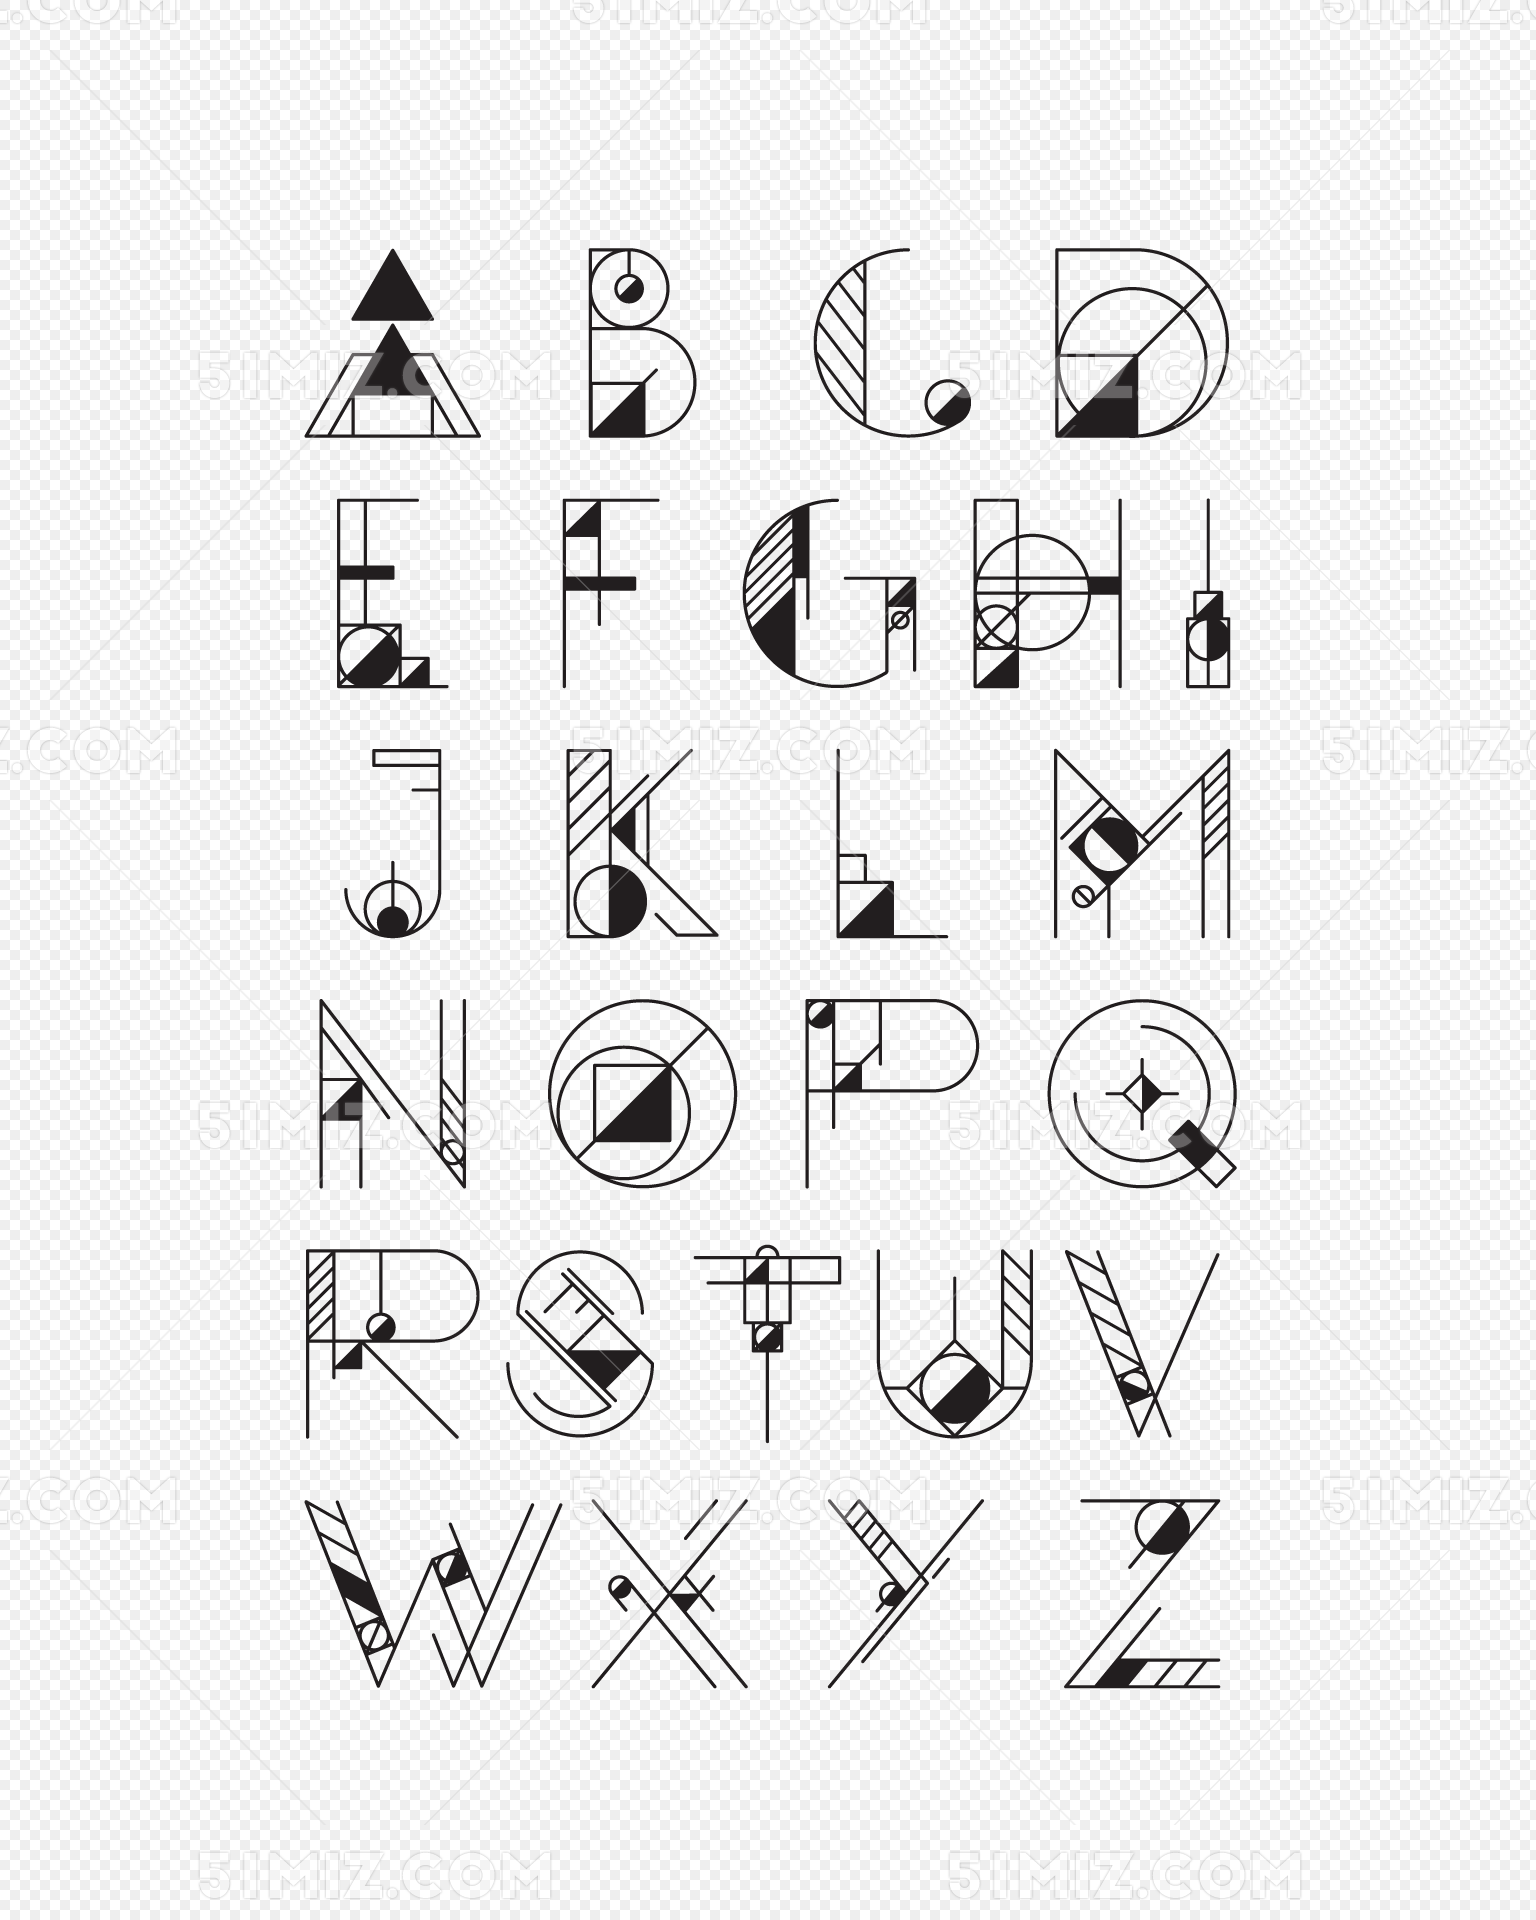 创意中文字体设计技法：几何造字 | 设计达人